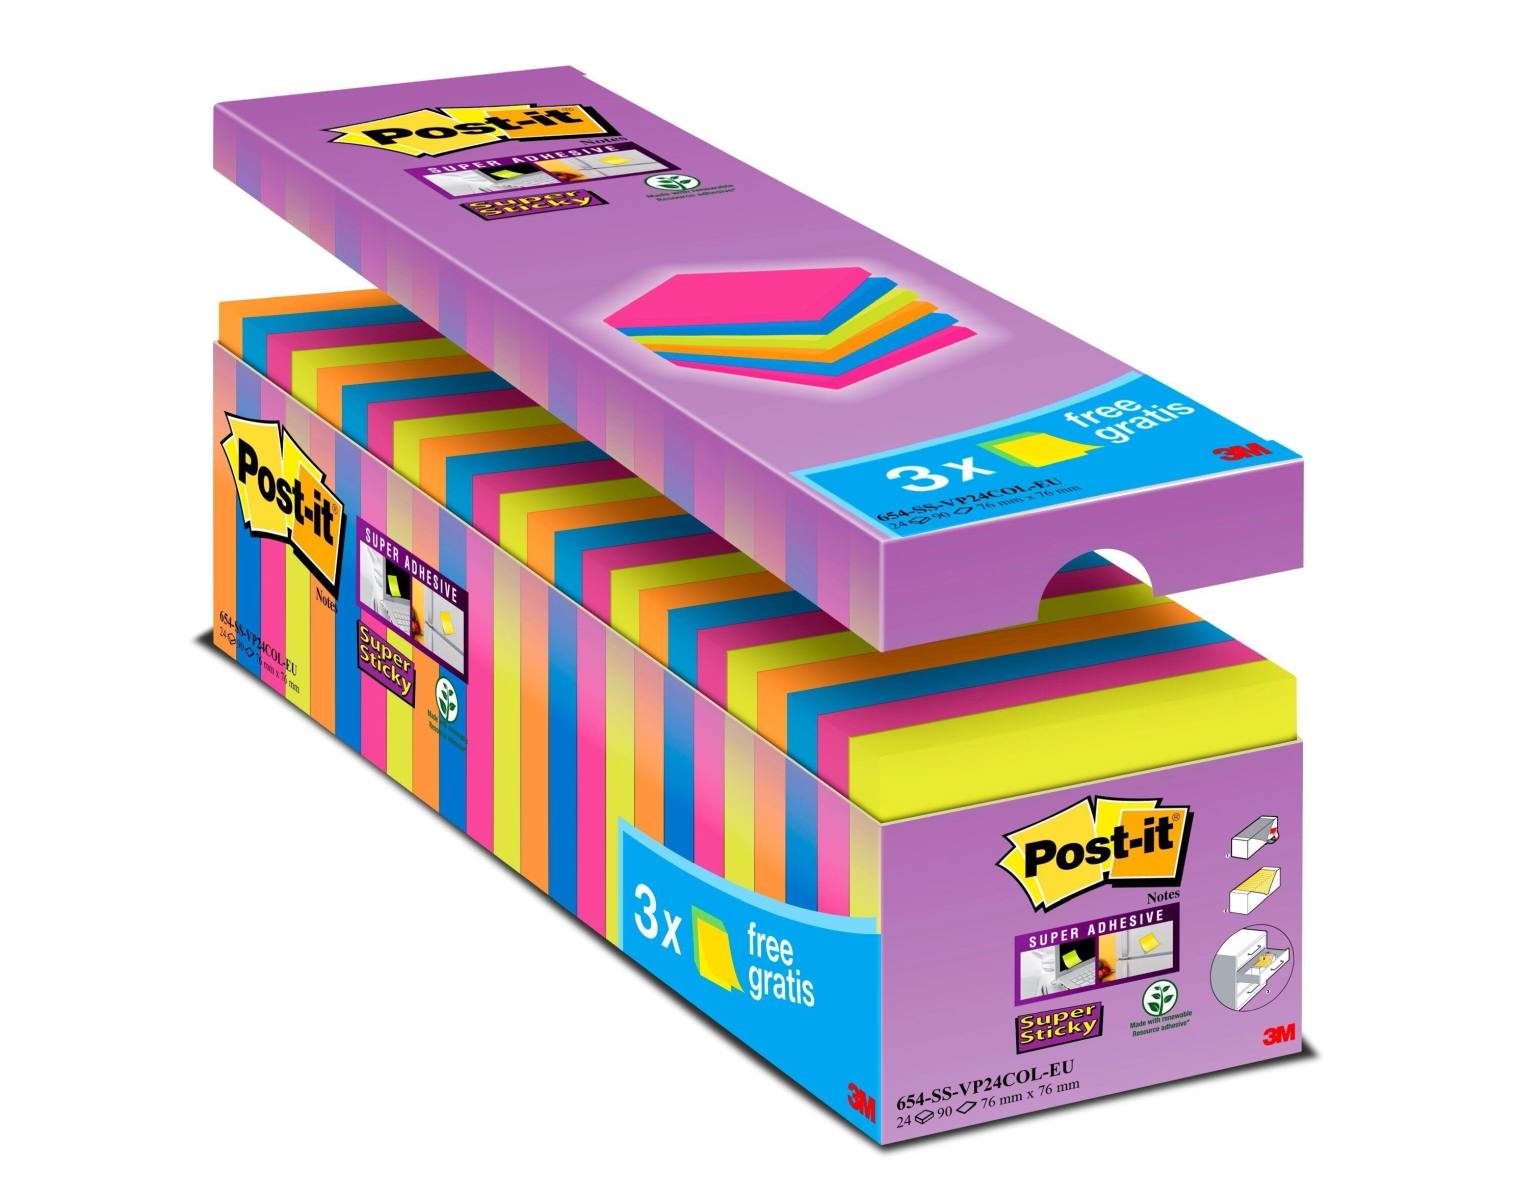 3M Post-it Super Sticky Notes Promoción 654SE24P, 24 blocs de 90 hojas a precio especial, colores surtidos, 76 mm x 76 mm